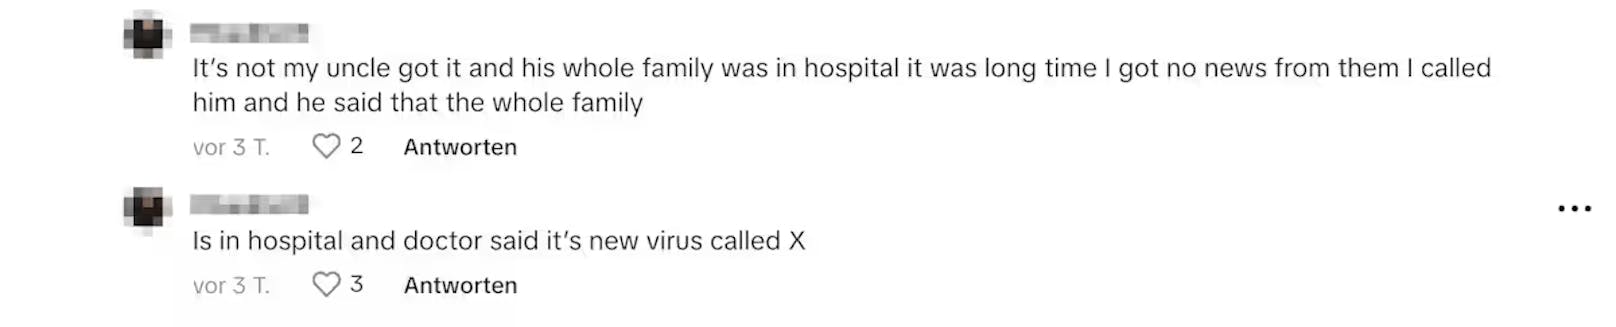 Darunter auch einer, der behauptet, seine Familie habe "Disease X" gehabt. Doch es gibt keine neue Krankheit mit diesem Namen.